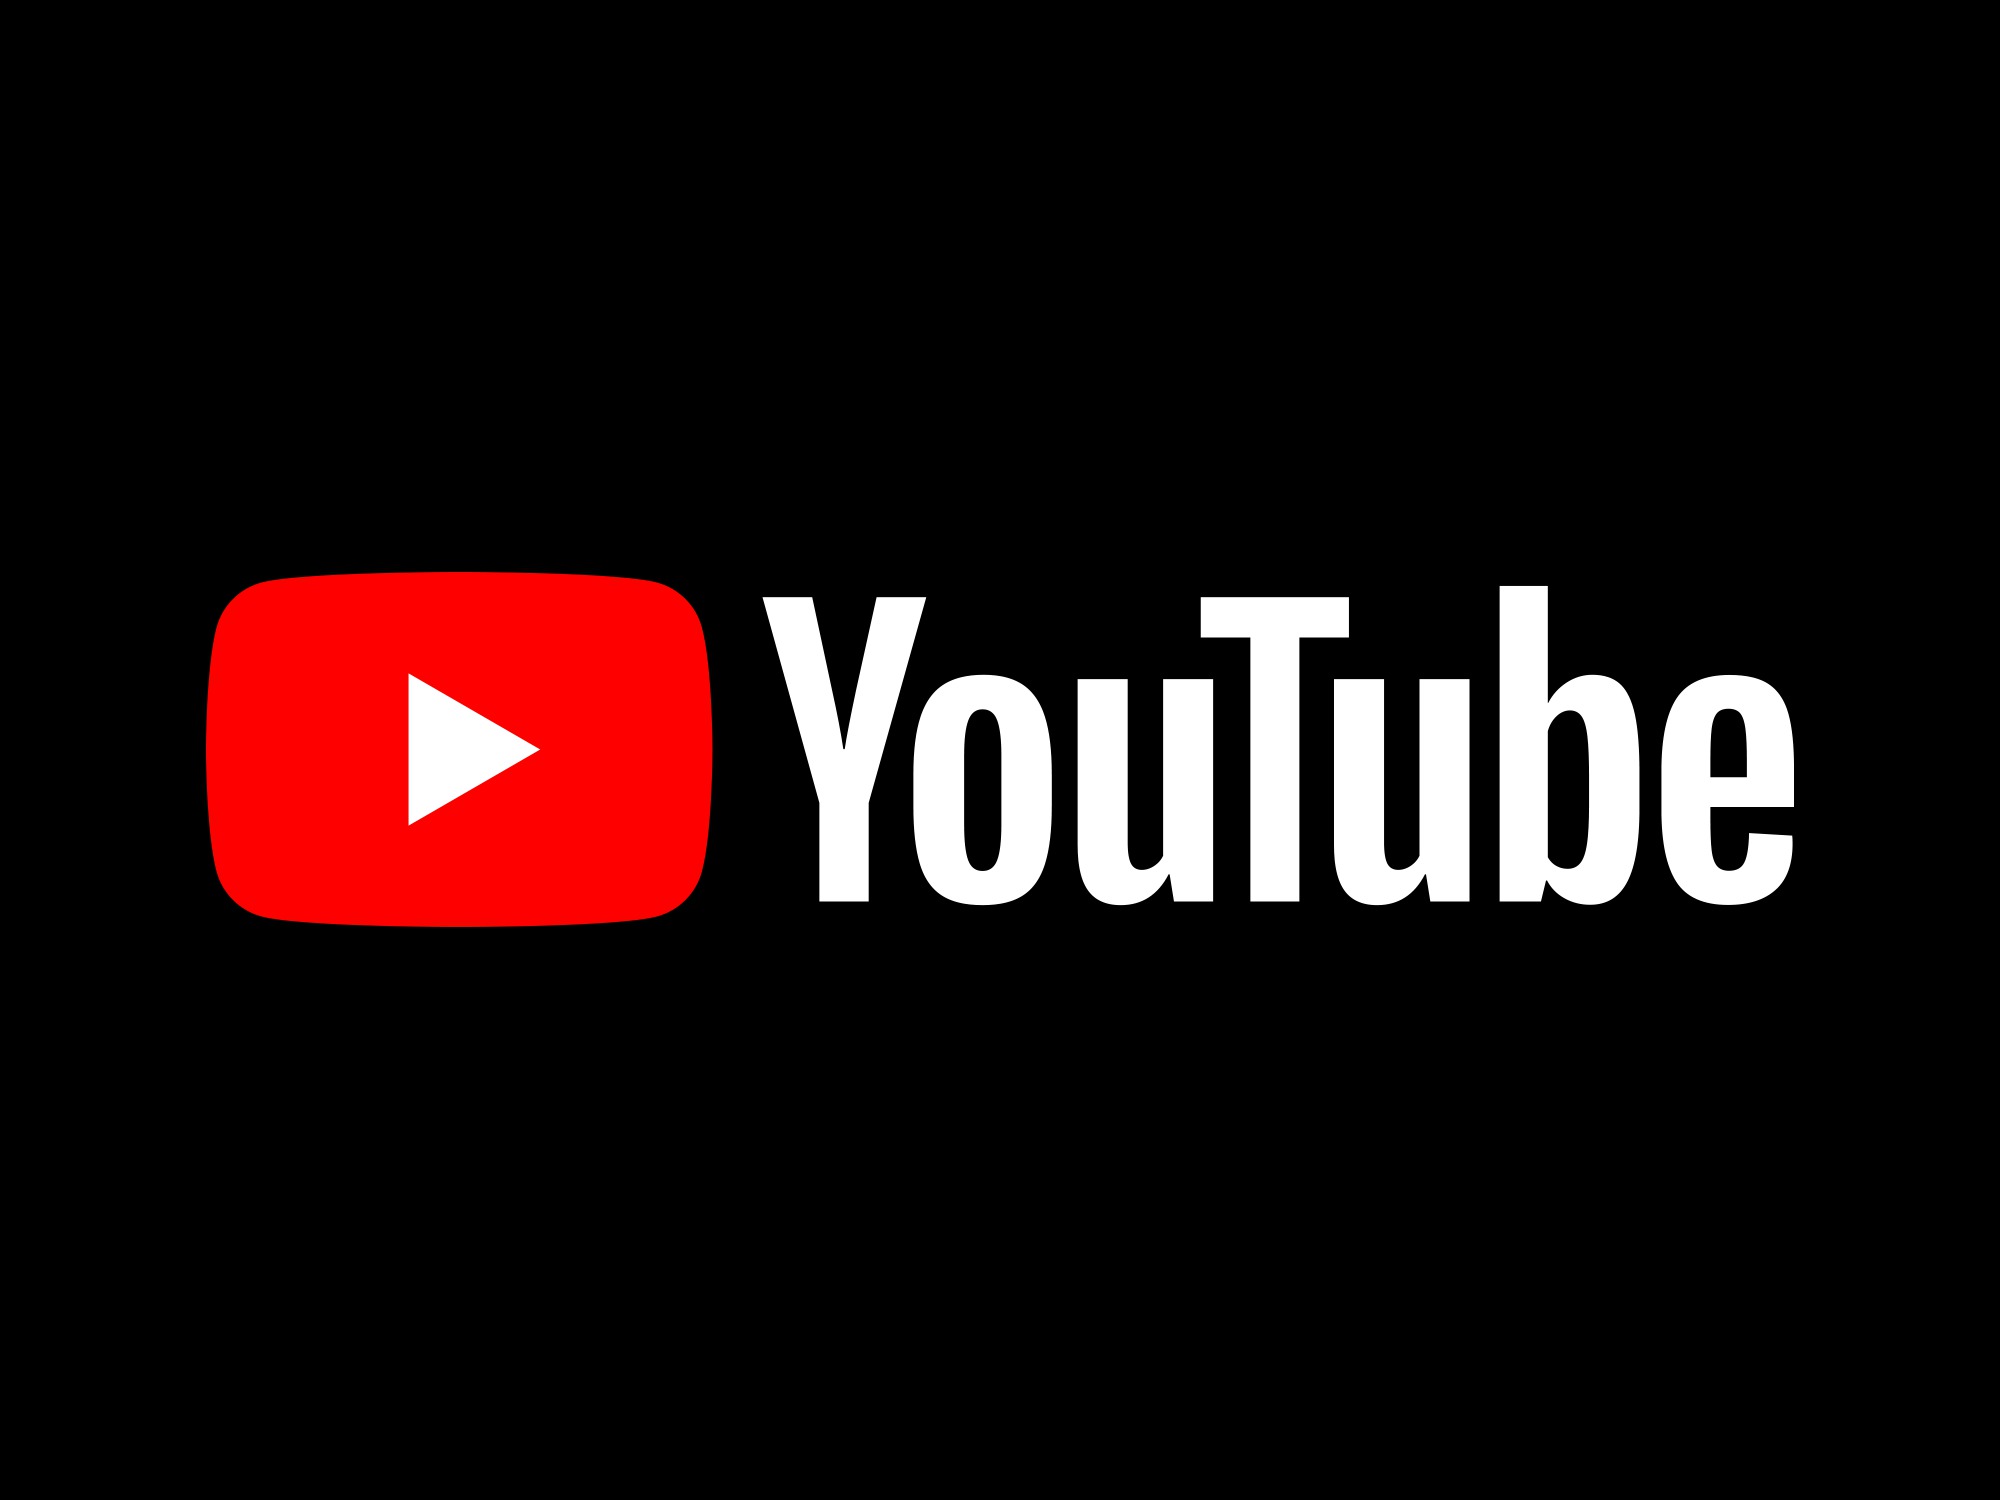 YouTube એ ટિકટોક જેવી શોર્ટ વીડિયો મેકિંગ એપ શરૂ કરી